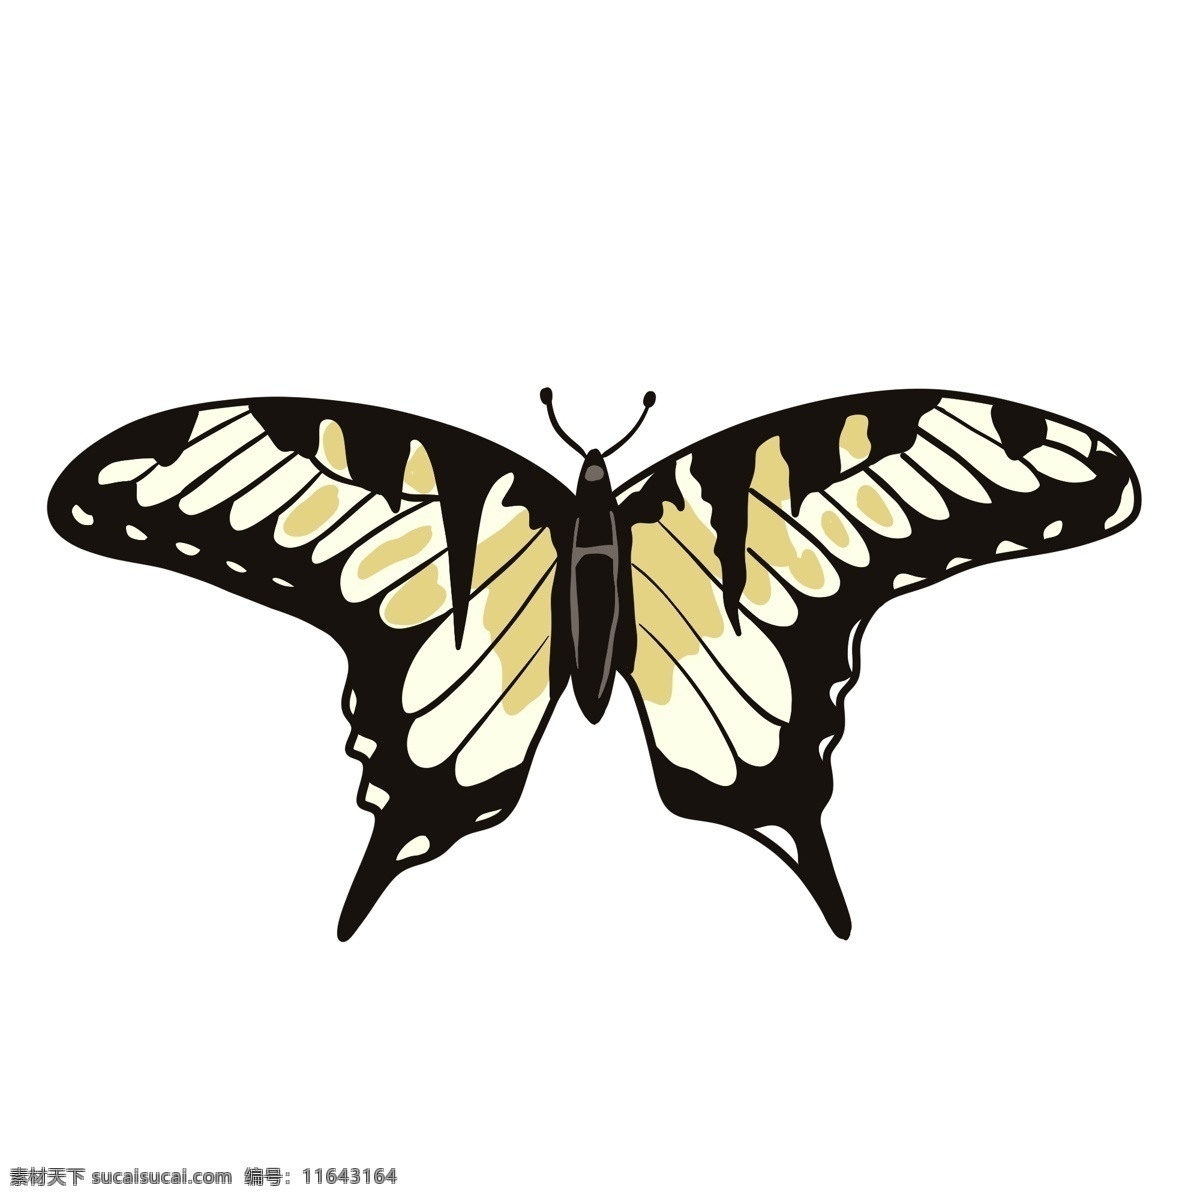 黄 黑色 蝴蝶 插画 手绘 元素 飞蛾 动物 昆虫 装饰 翅膀 黄色 触角 飞翔 飞行 小蝴蝶 可爱 形象 采花蜜